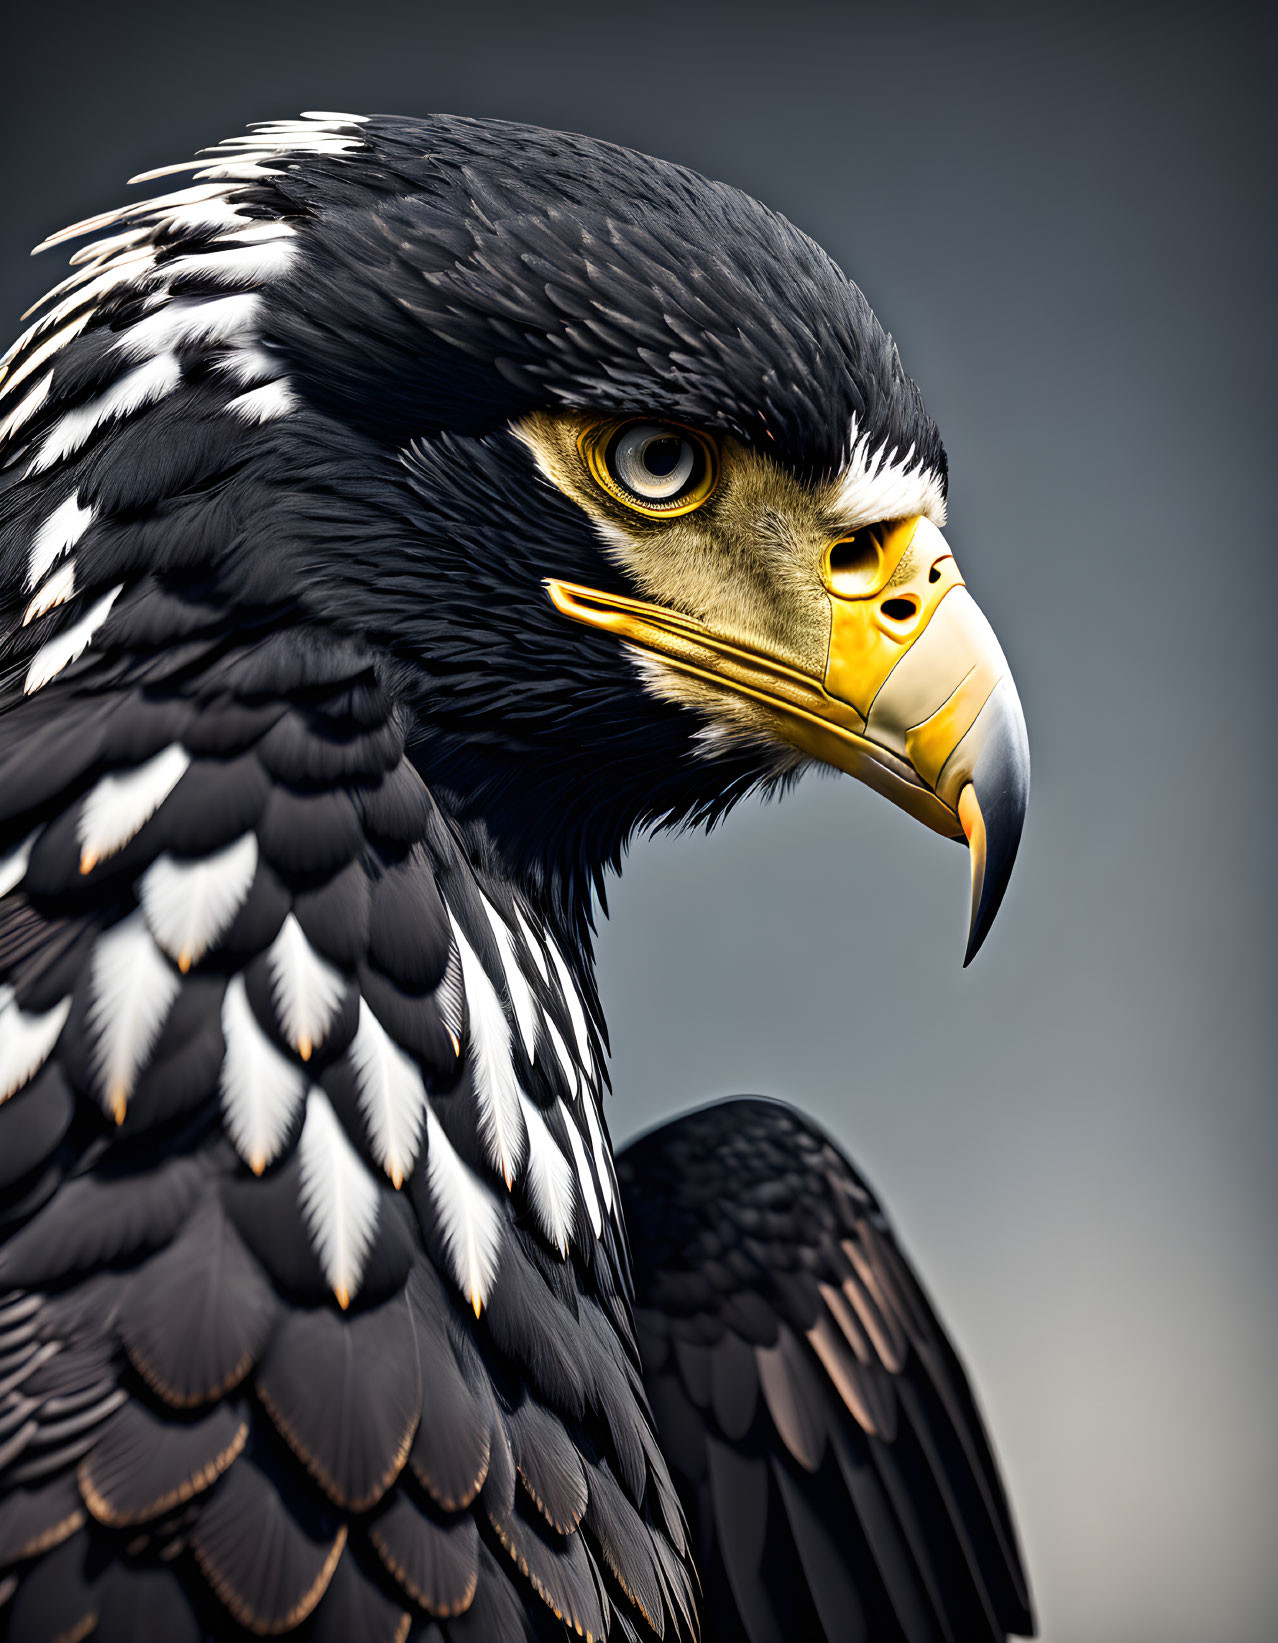 Majestic eagle with sharp beak and intense eyes